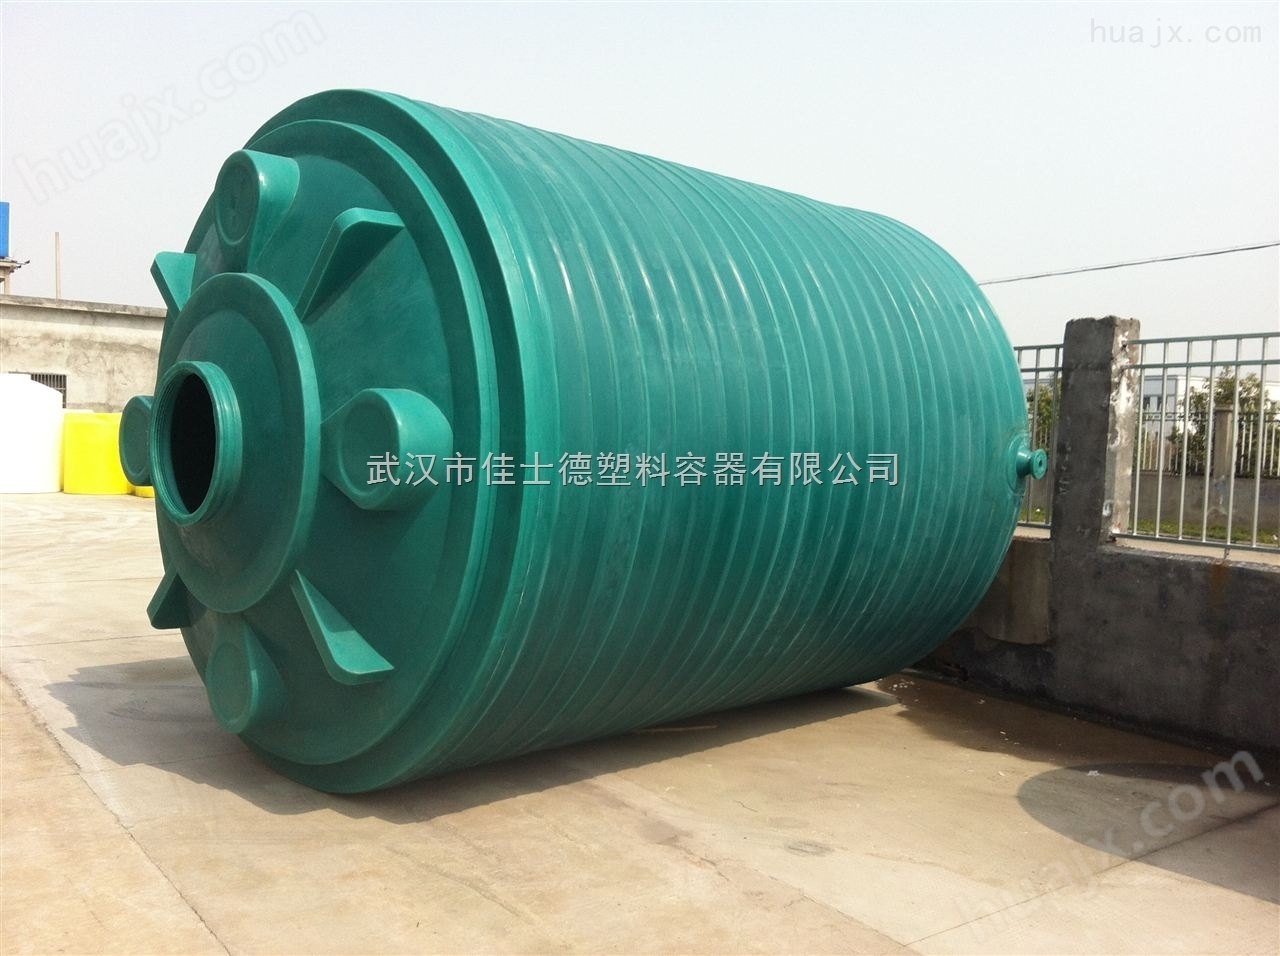 湖北武汉市30吨养殖场塑料储水罐